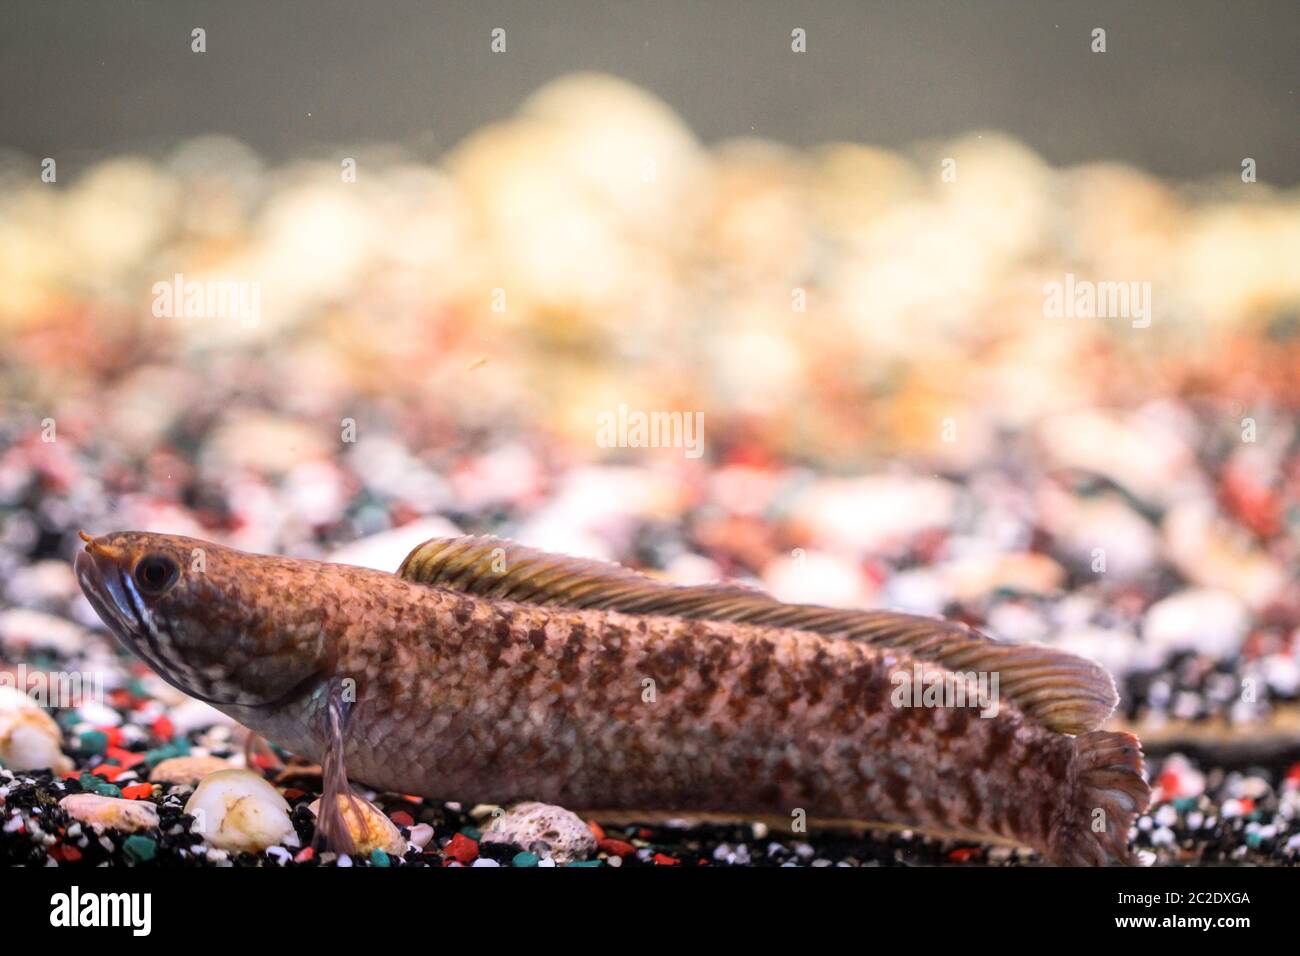 Detail of a mud-head fish in aquarium Stock Photo